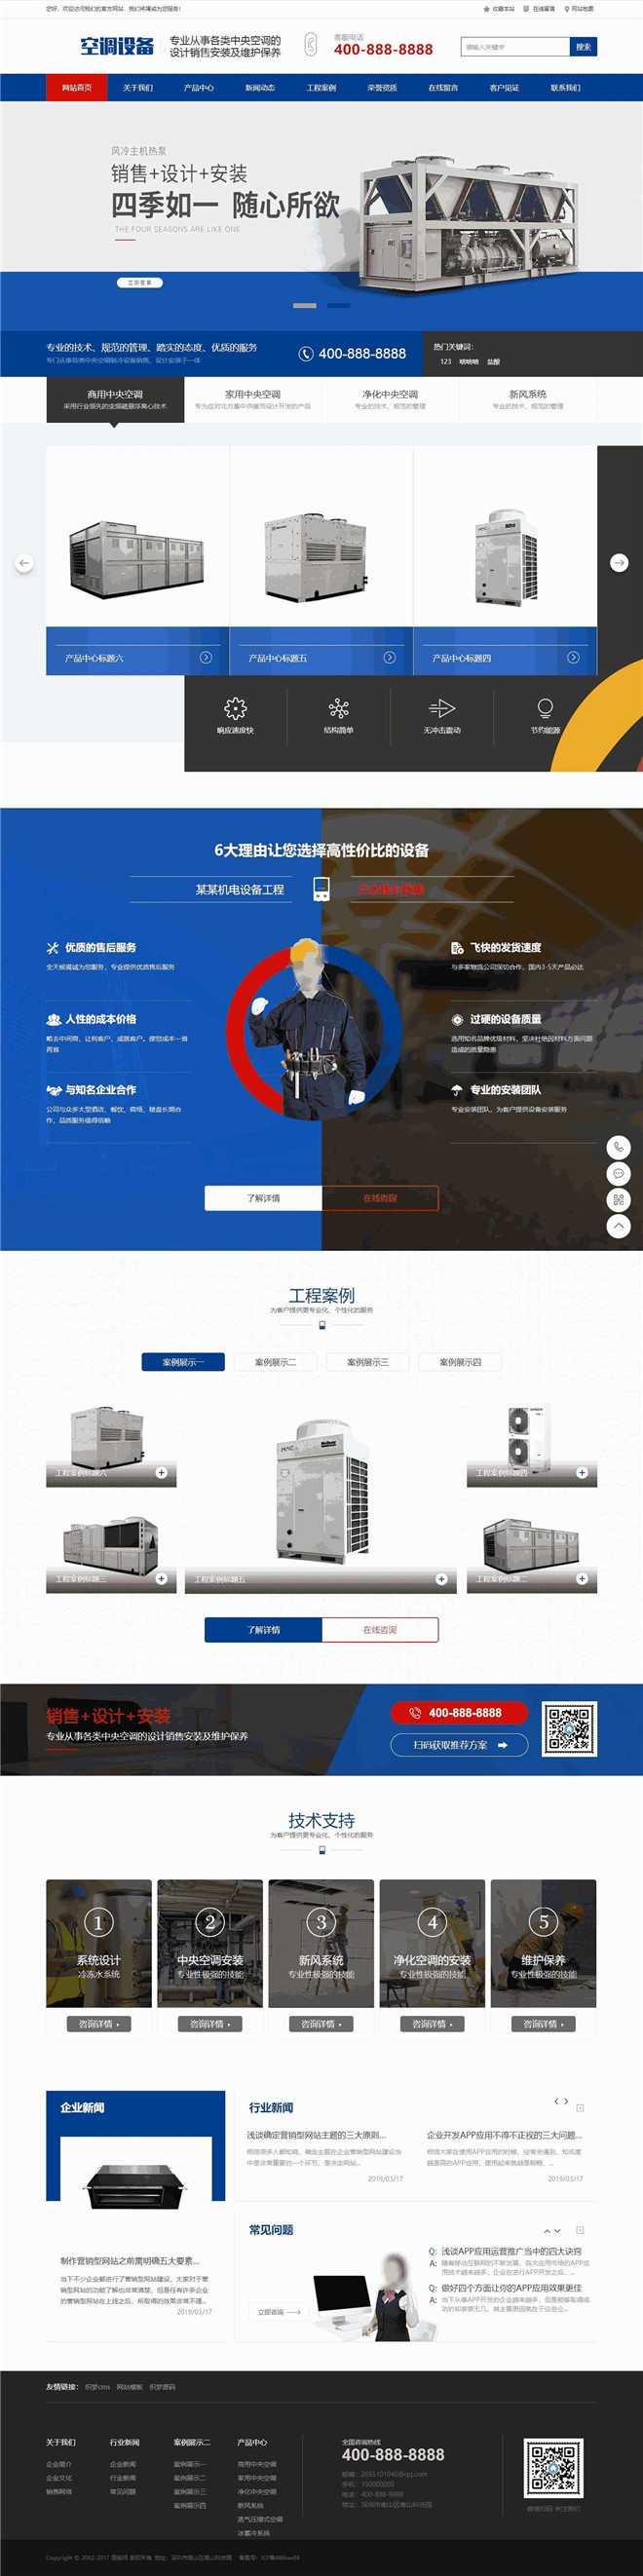 宽屏营销型空调设备空调机类网站模板截图